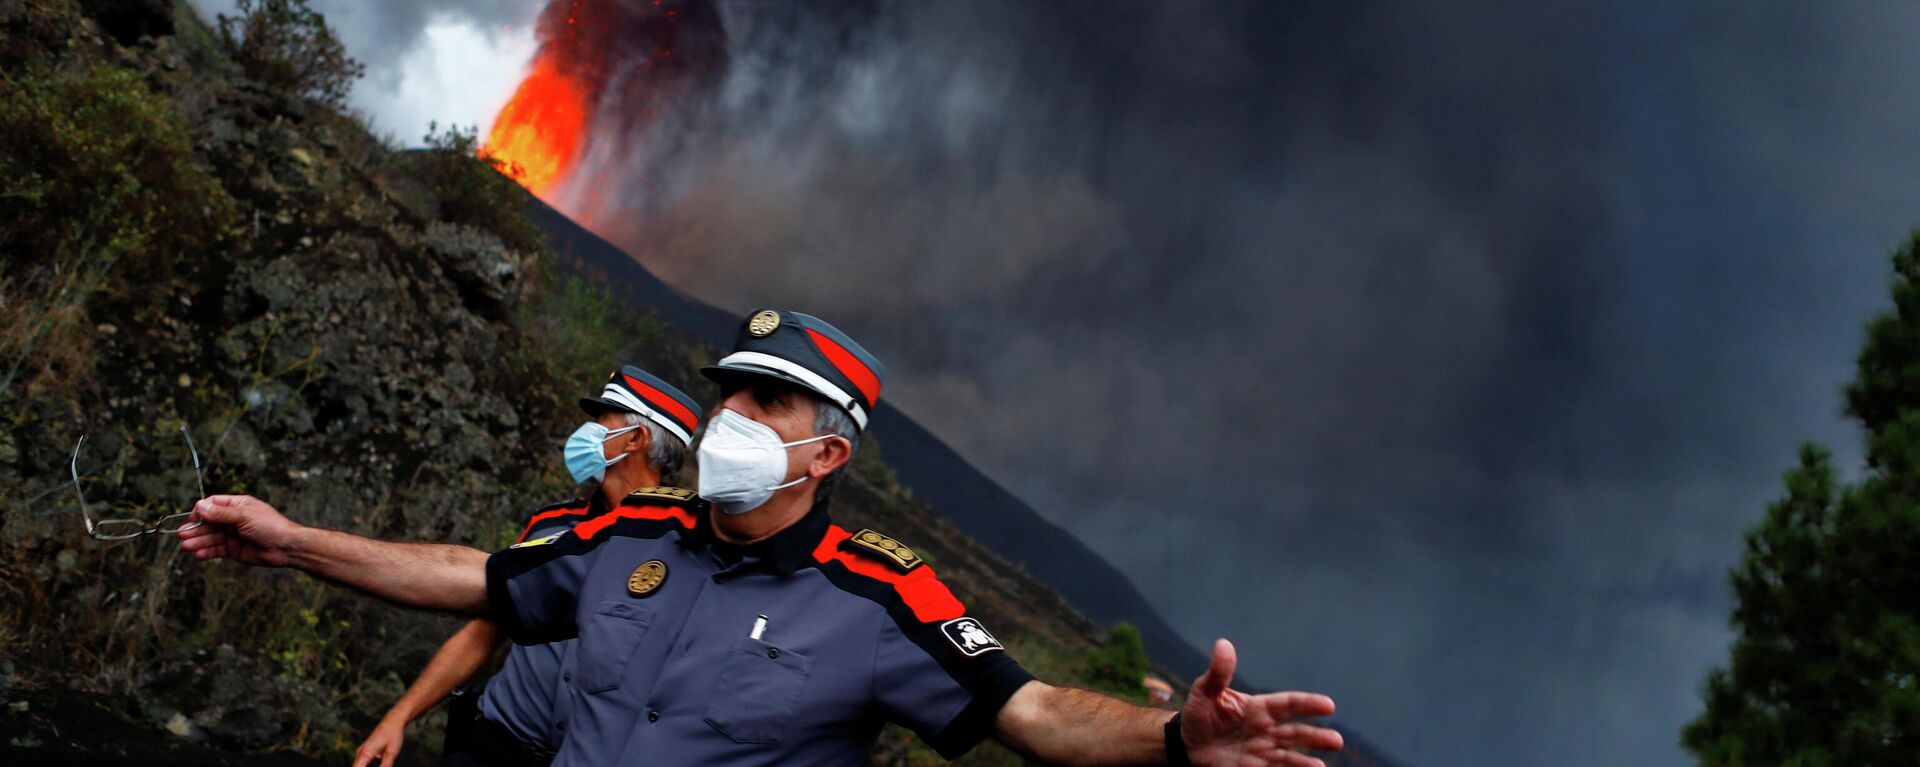 İspanya'nın güneybatısındaki Kanarya Adaları grubunda yer alan La Palma adasında 19 Eylül'den bu yana aktif durumda olan Cumbre Vieja yanardağının şimdiye kadar 400 evi yaktığı bildirildi. - Sputnik Türkiye, 1920, 23.09.2021